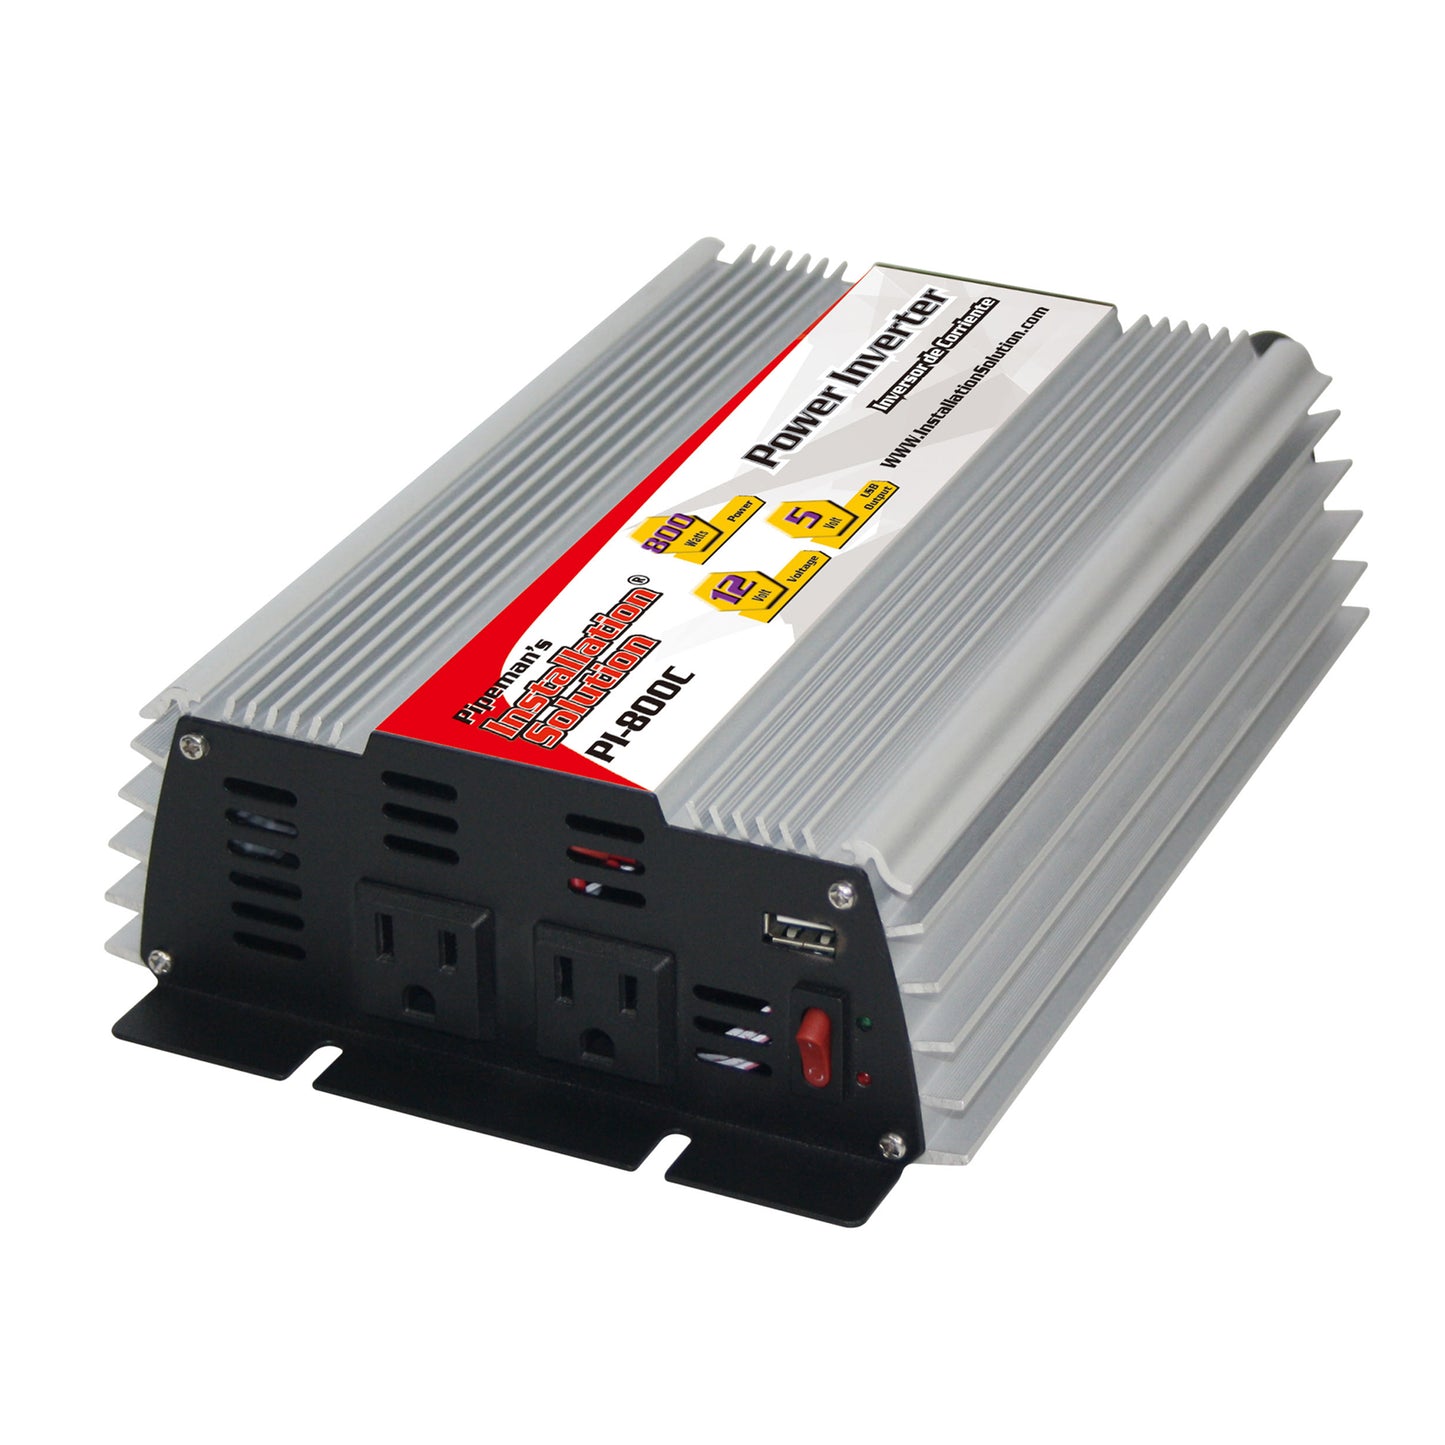 PI-800C - 800 Watts - 12V DC to 120V AC Power Inverter